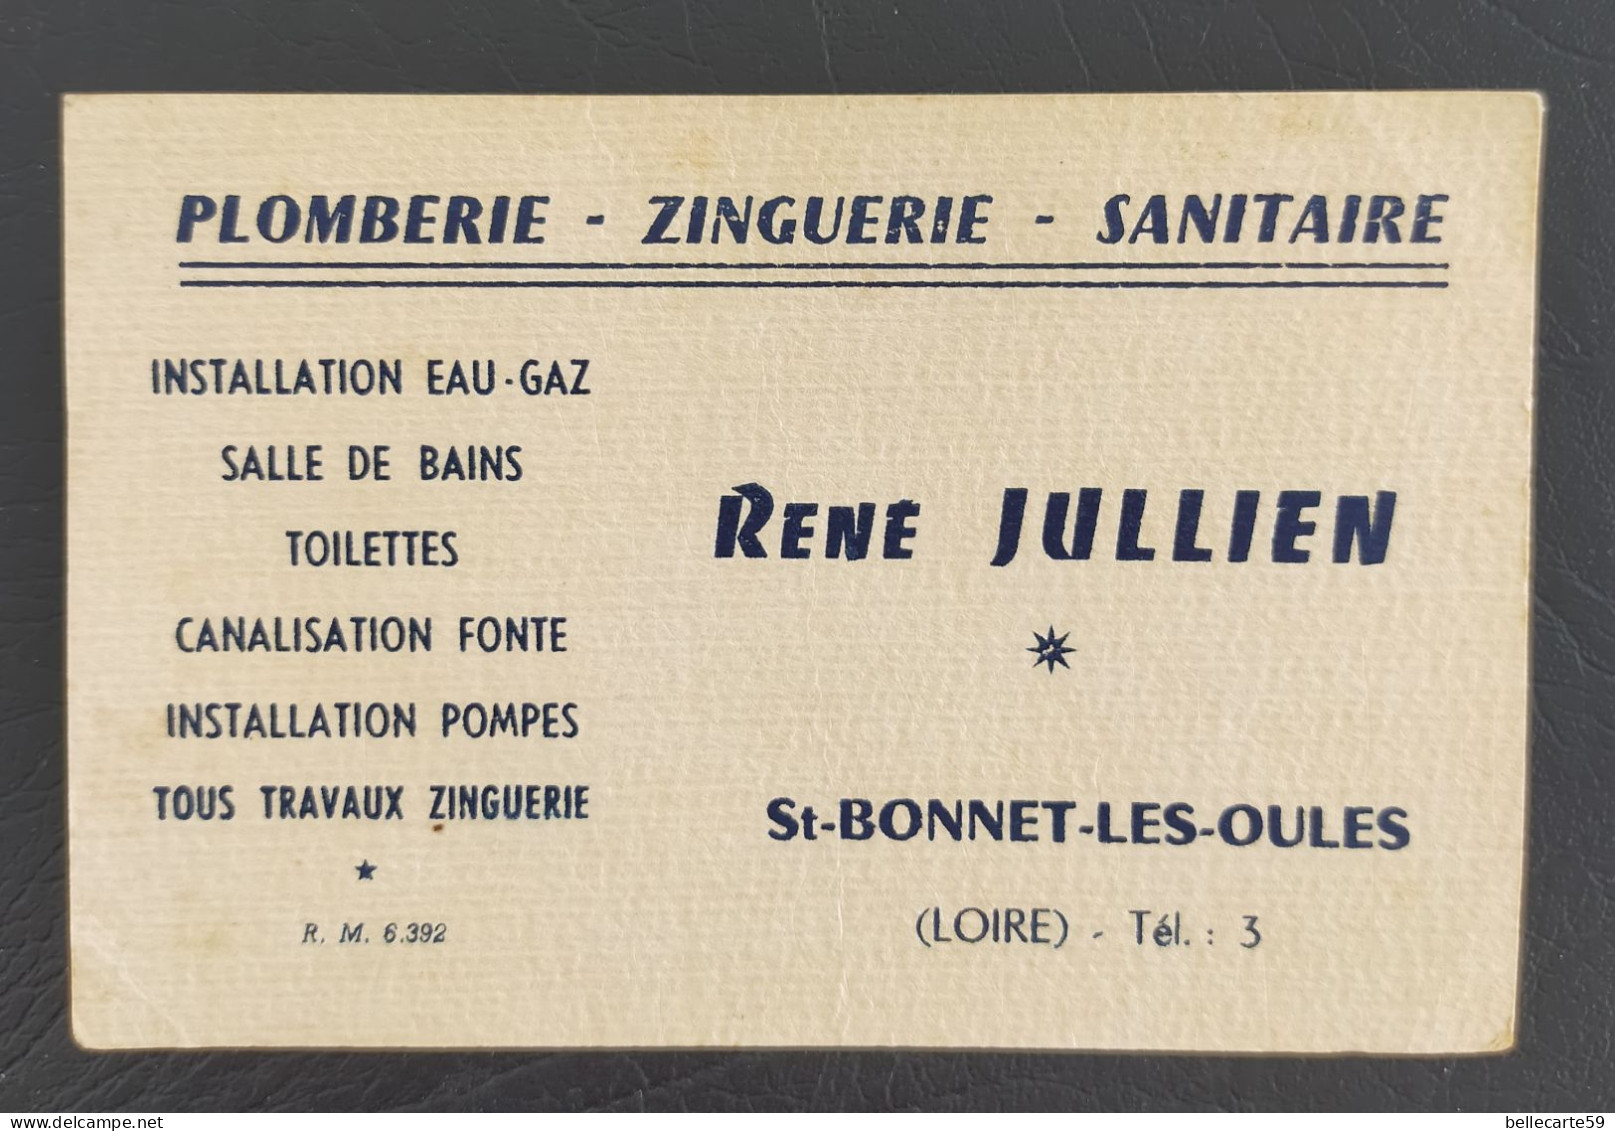 Carte De Visite Saint-Bonnet-les-Oules René Jullien Plomberie Zinguerie Sanitaire - Visiting Cards